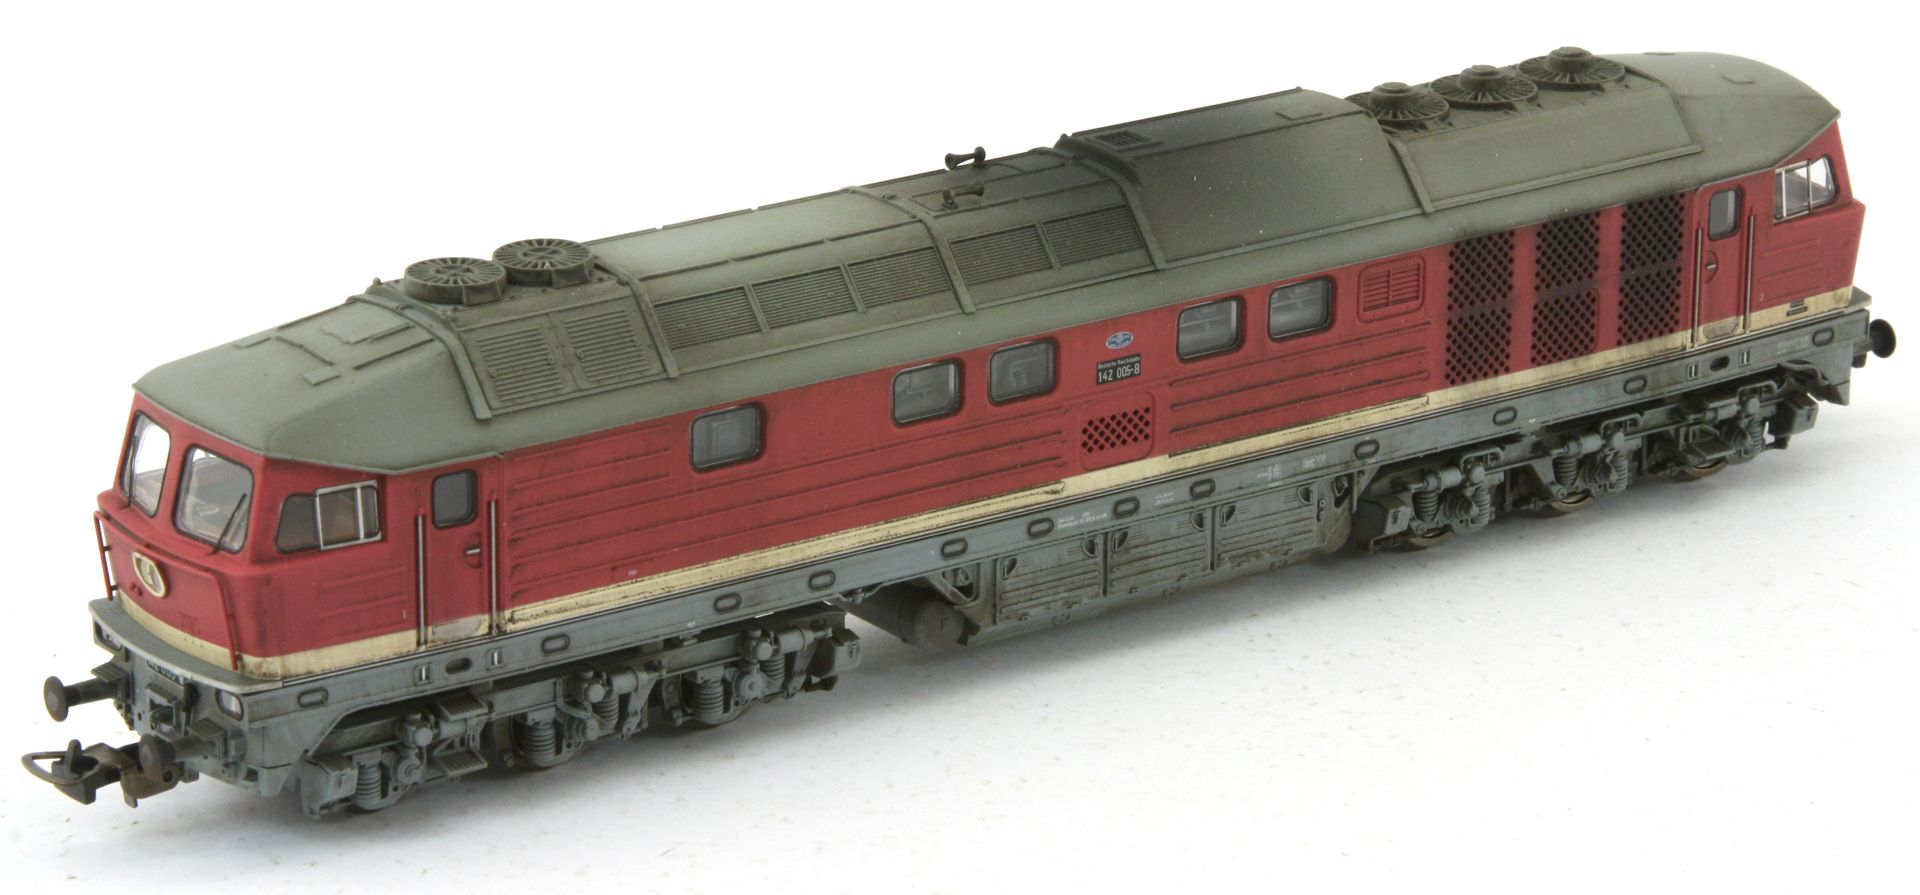 Saxonia 87056 - Diesellok 142 005-8, DR, Ep.IV, DC-Sound, gealtert